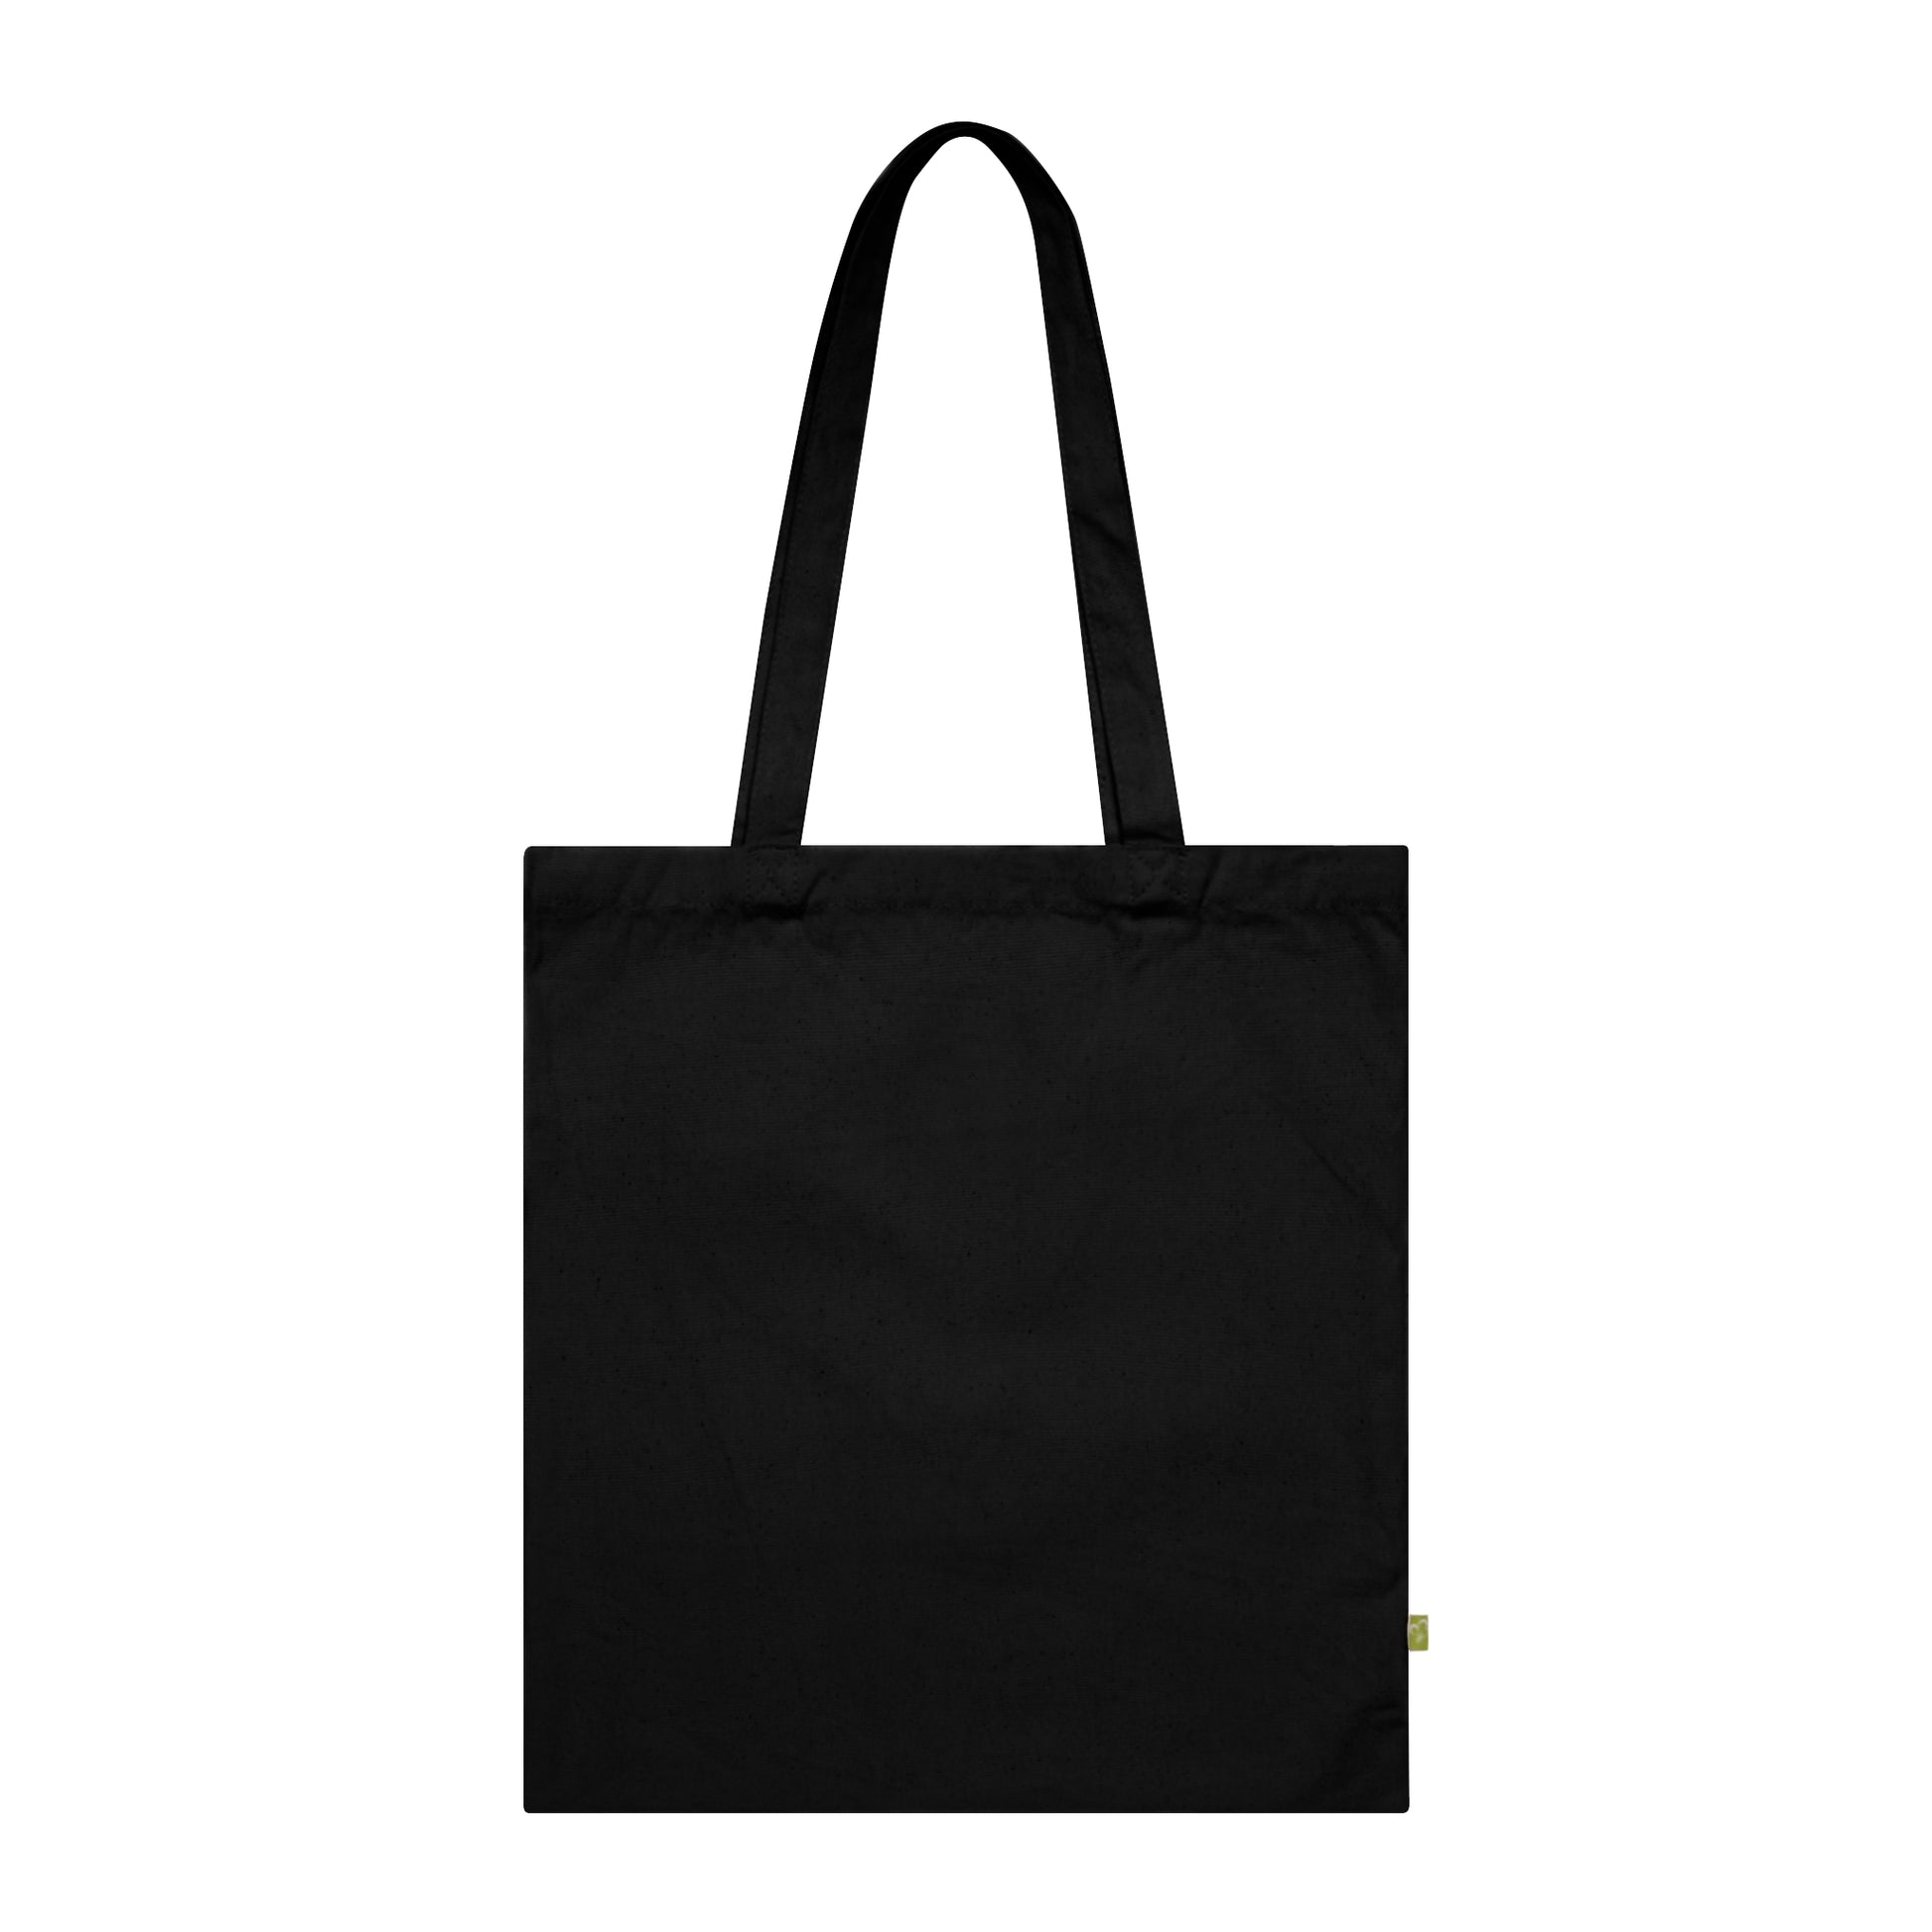 Tote Bag Dark Memento Mori - Remember Death - Frogos Design